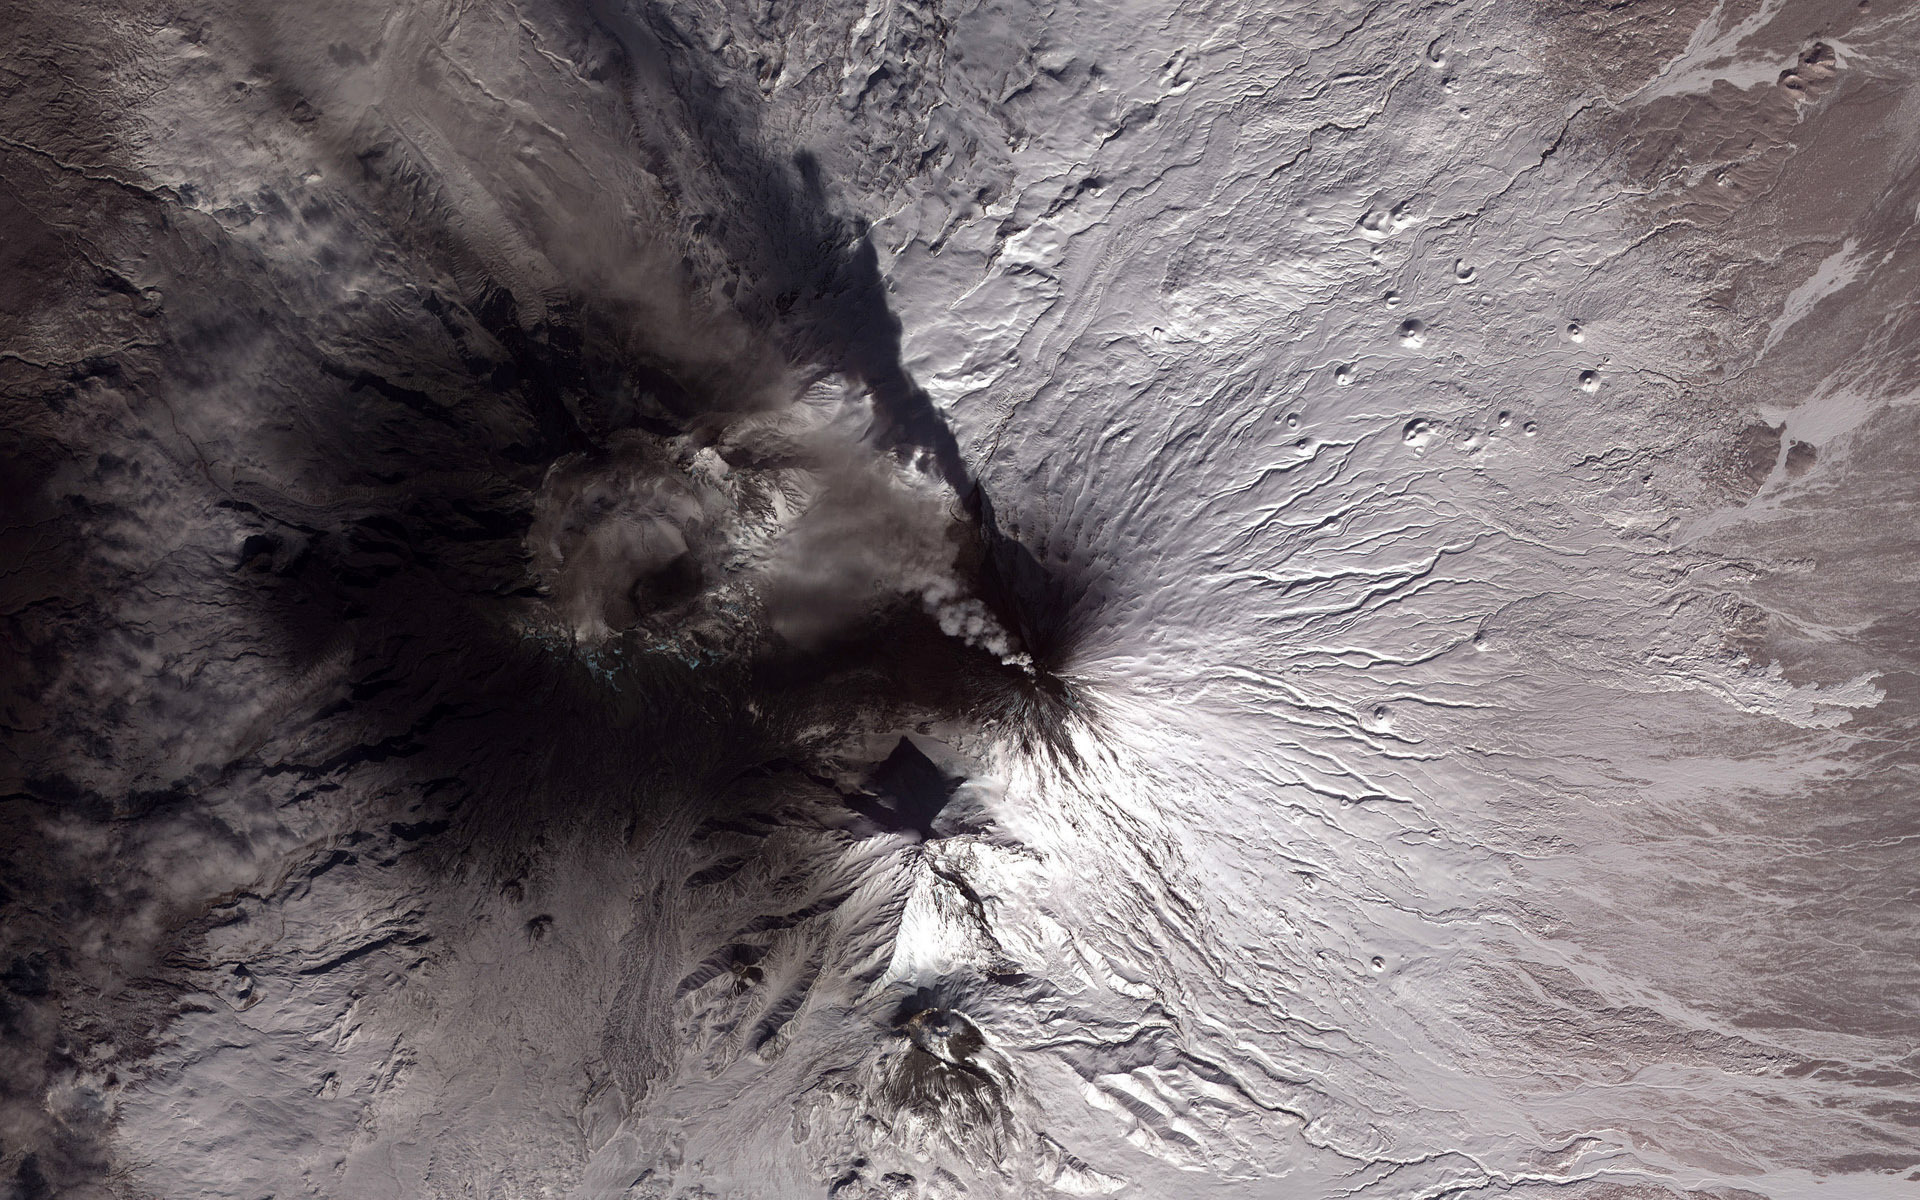 Извержение вулкана Сарычева из космоса